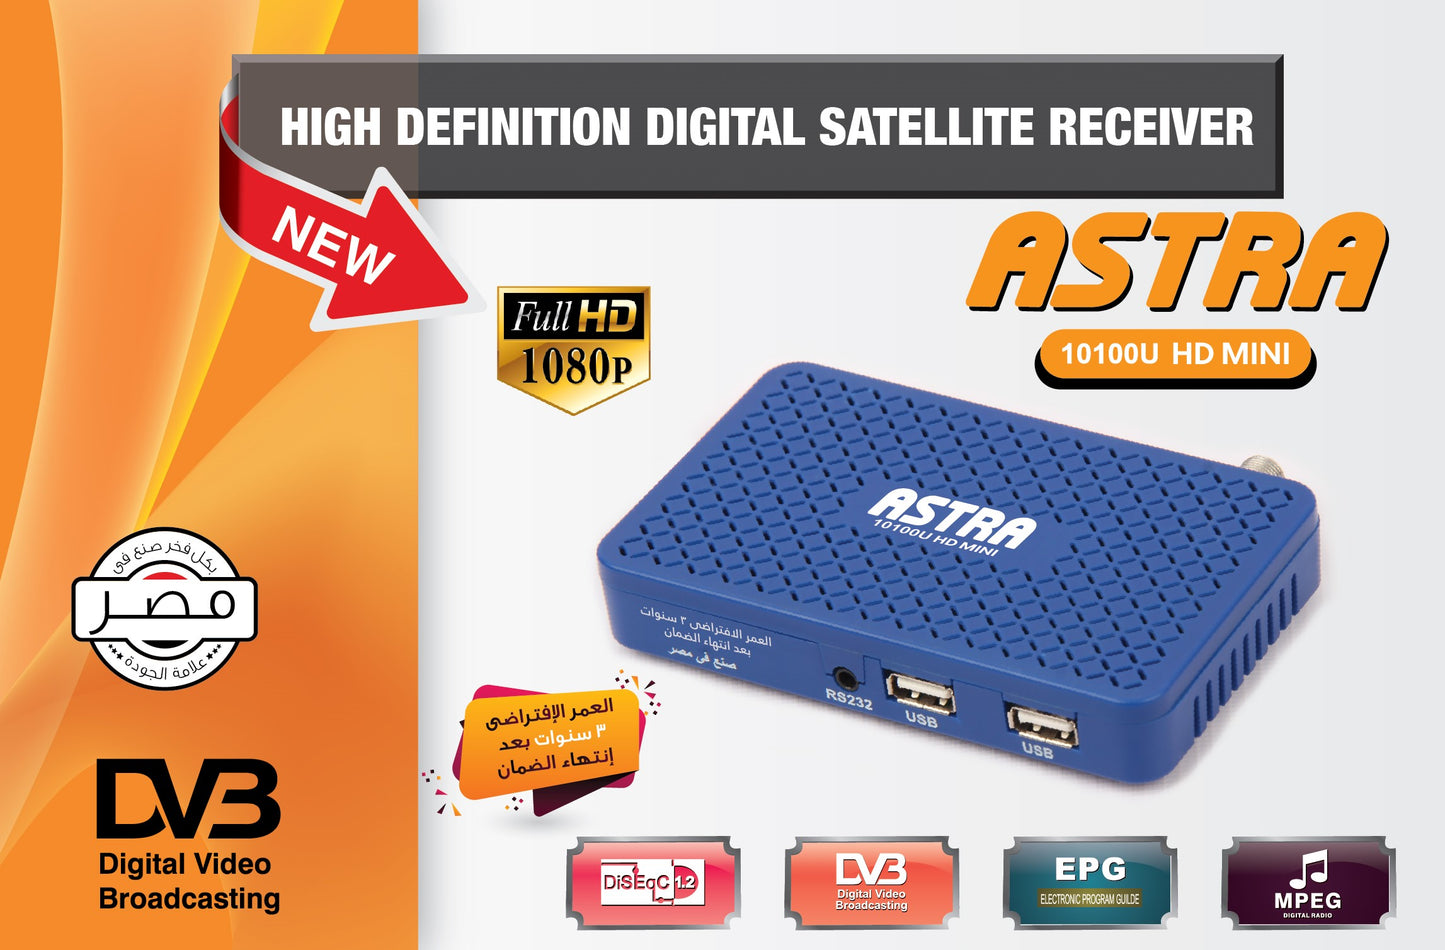 ASTRA, 10100U HD Mini, 2 USB, Receiver